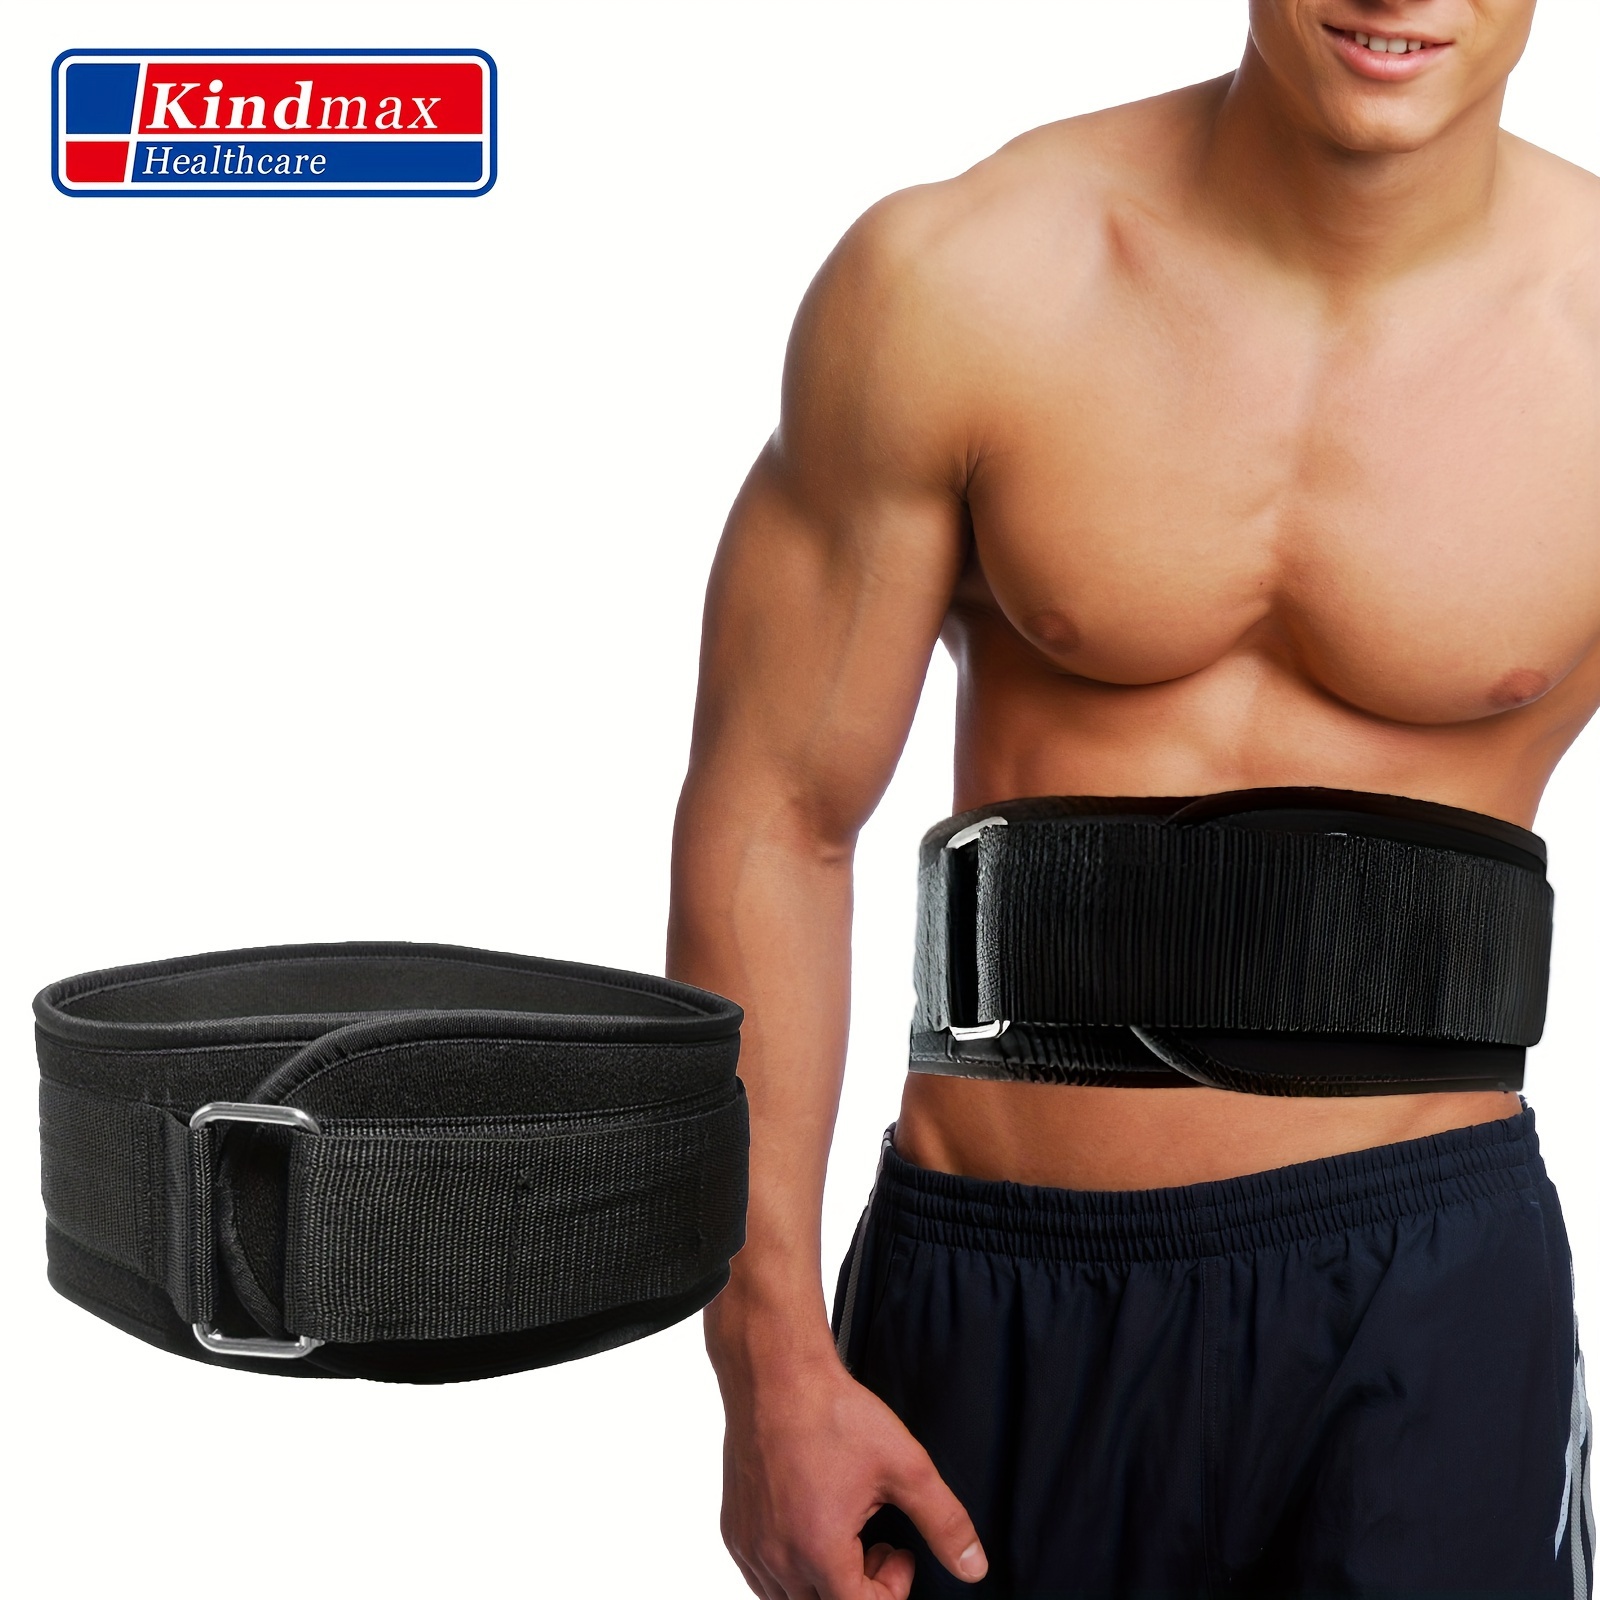 Weight Lifting Belt for Women & Men - Functional Workout Belt